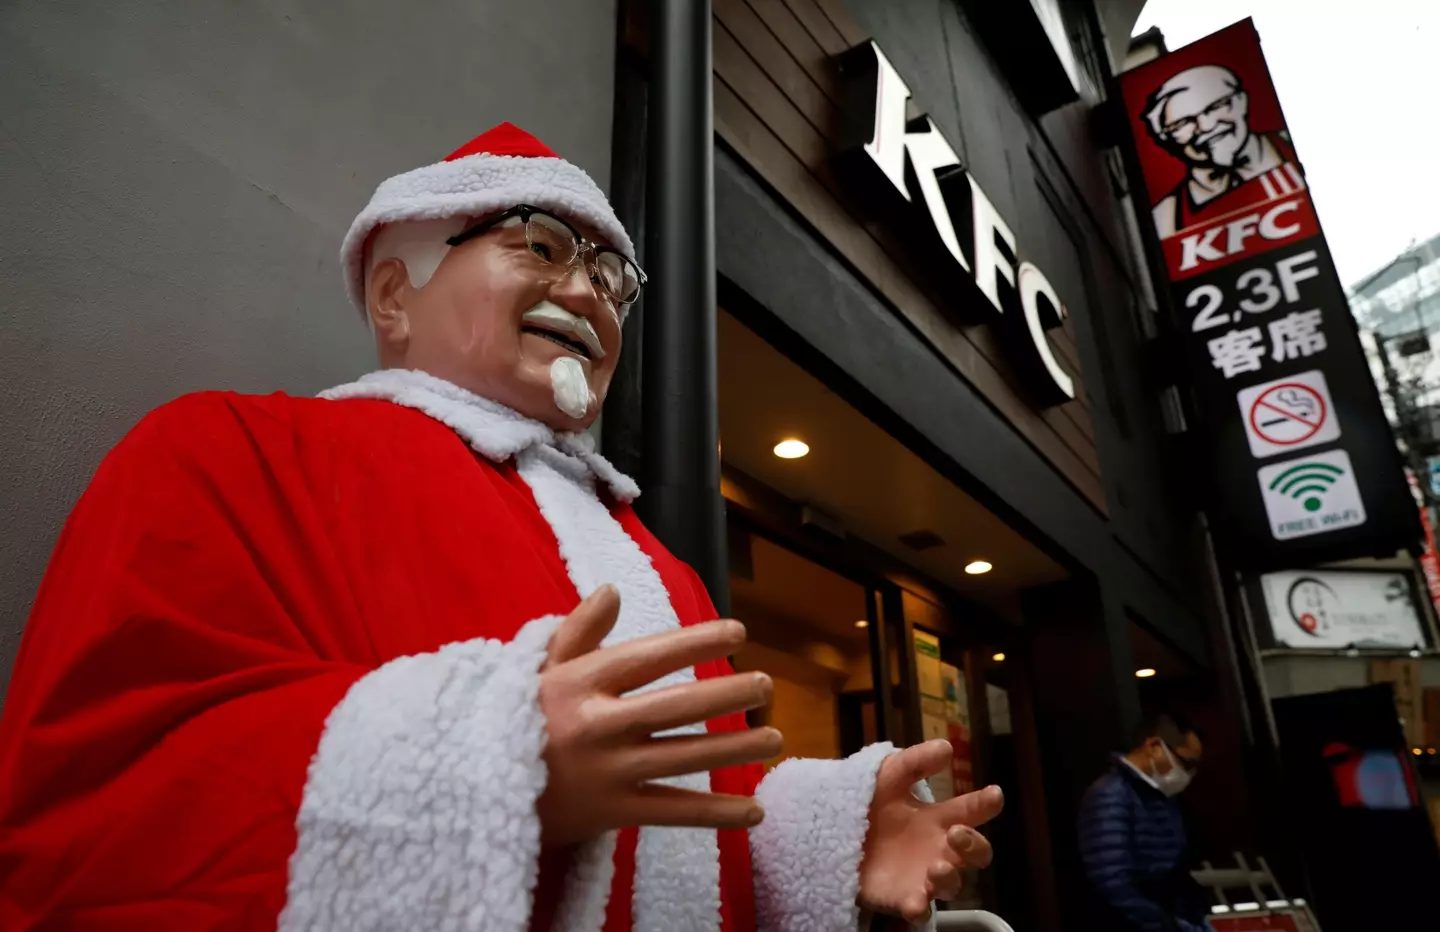 KFC for Christmas, anyone?